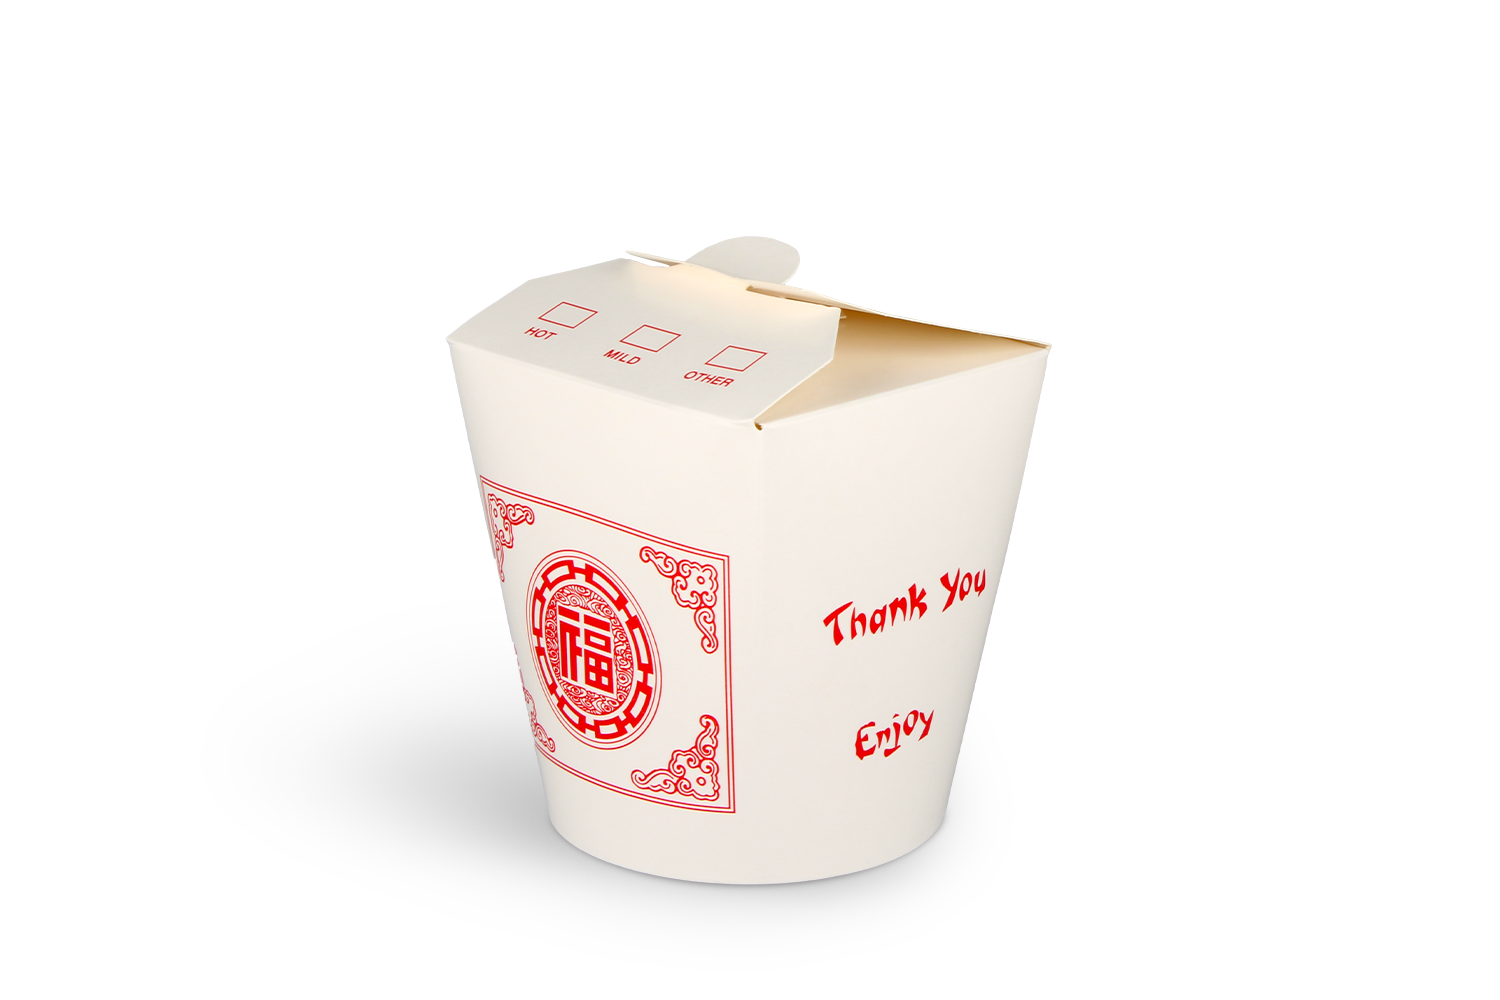 Carton Evebox blanc avec imprimé rouge-32oz